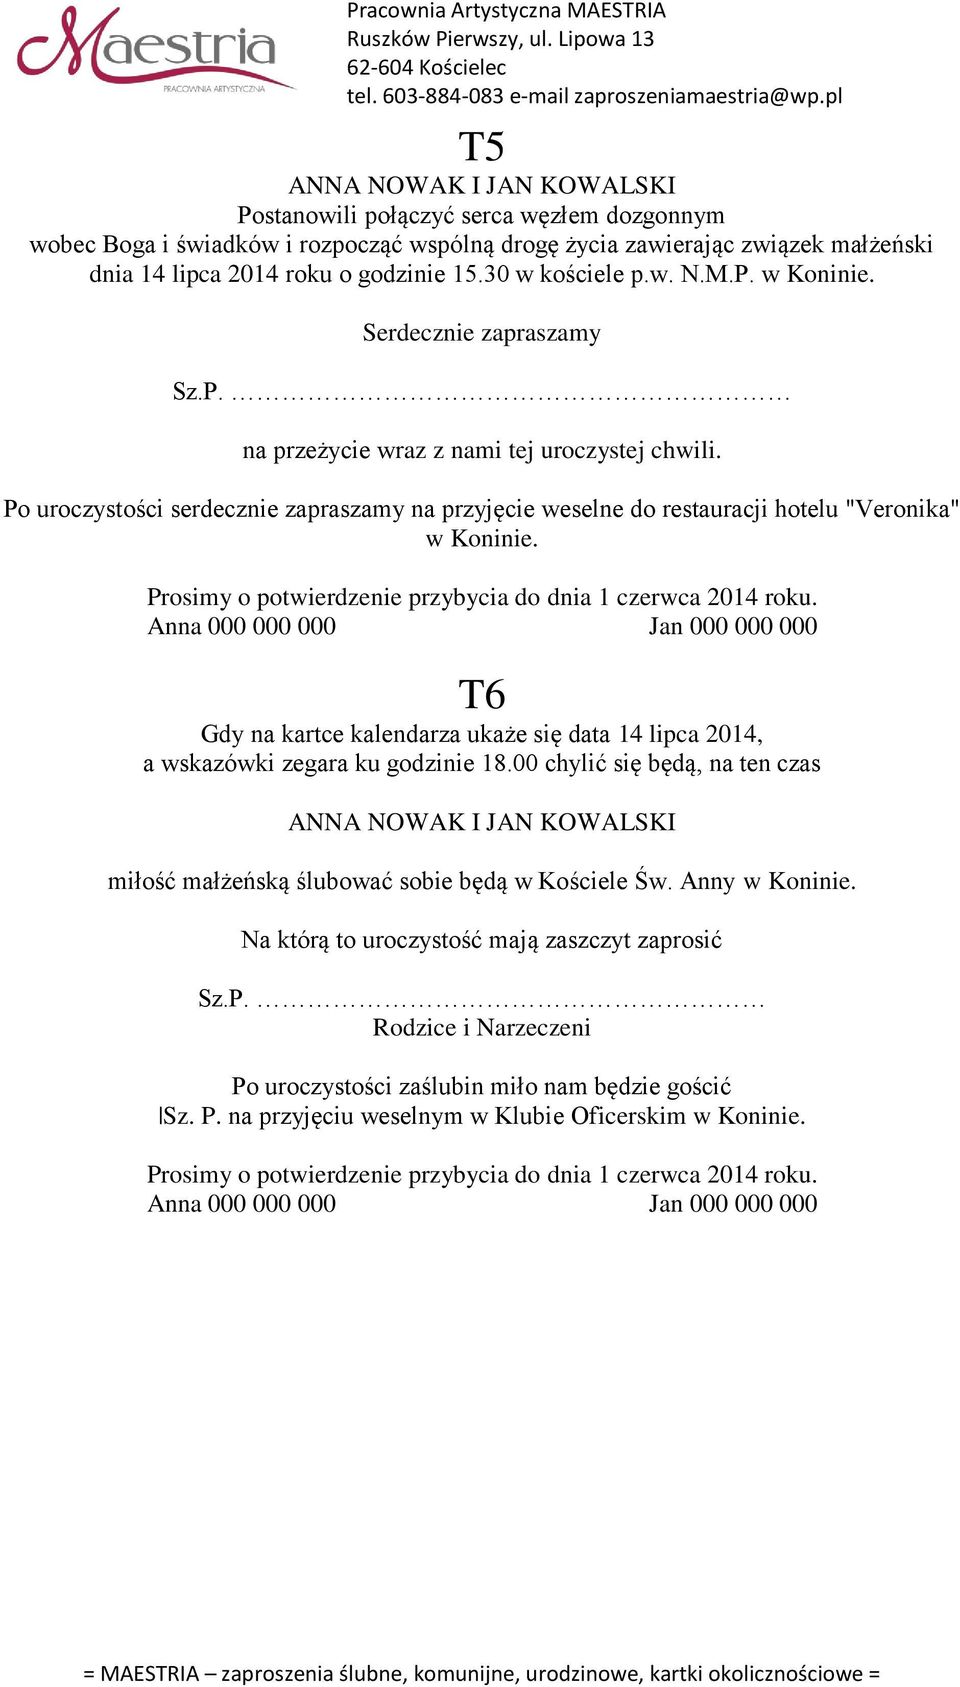 Po uroczystości serdecznie zapraszamy na przyjęcie weselne do restauracji hotelu "Veronika" w Koninie. T6 Gdy na kartce kalendarza ukaże się data 14 lipca 2014, a wskazówki zegara ku godzinie 18.